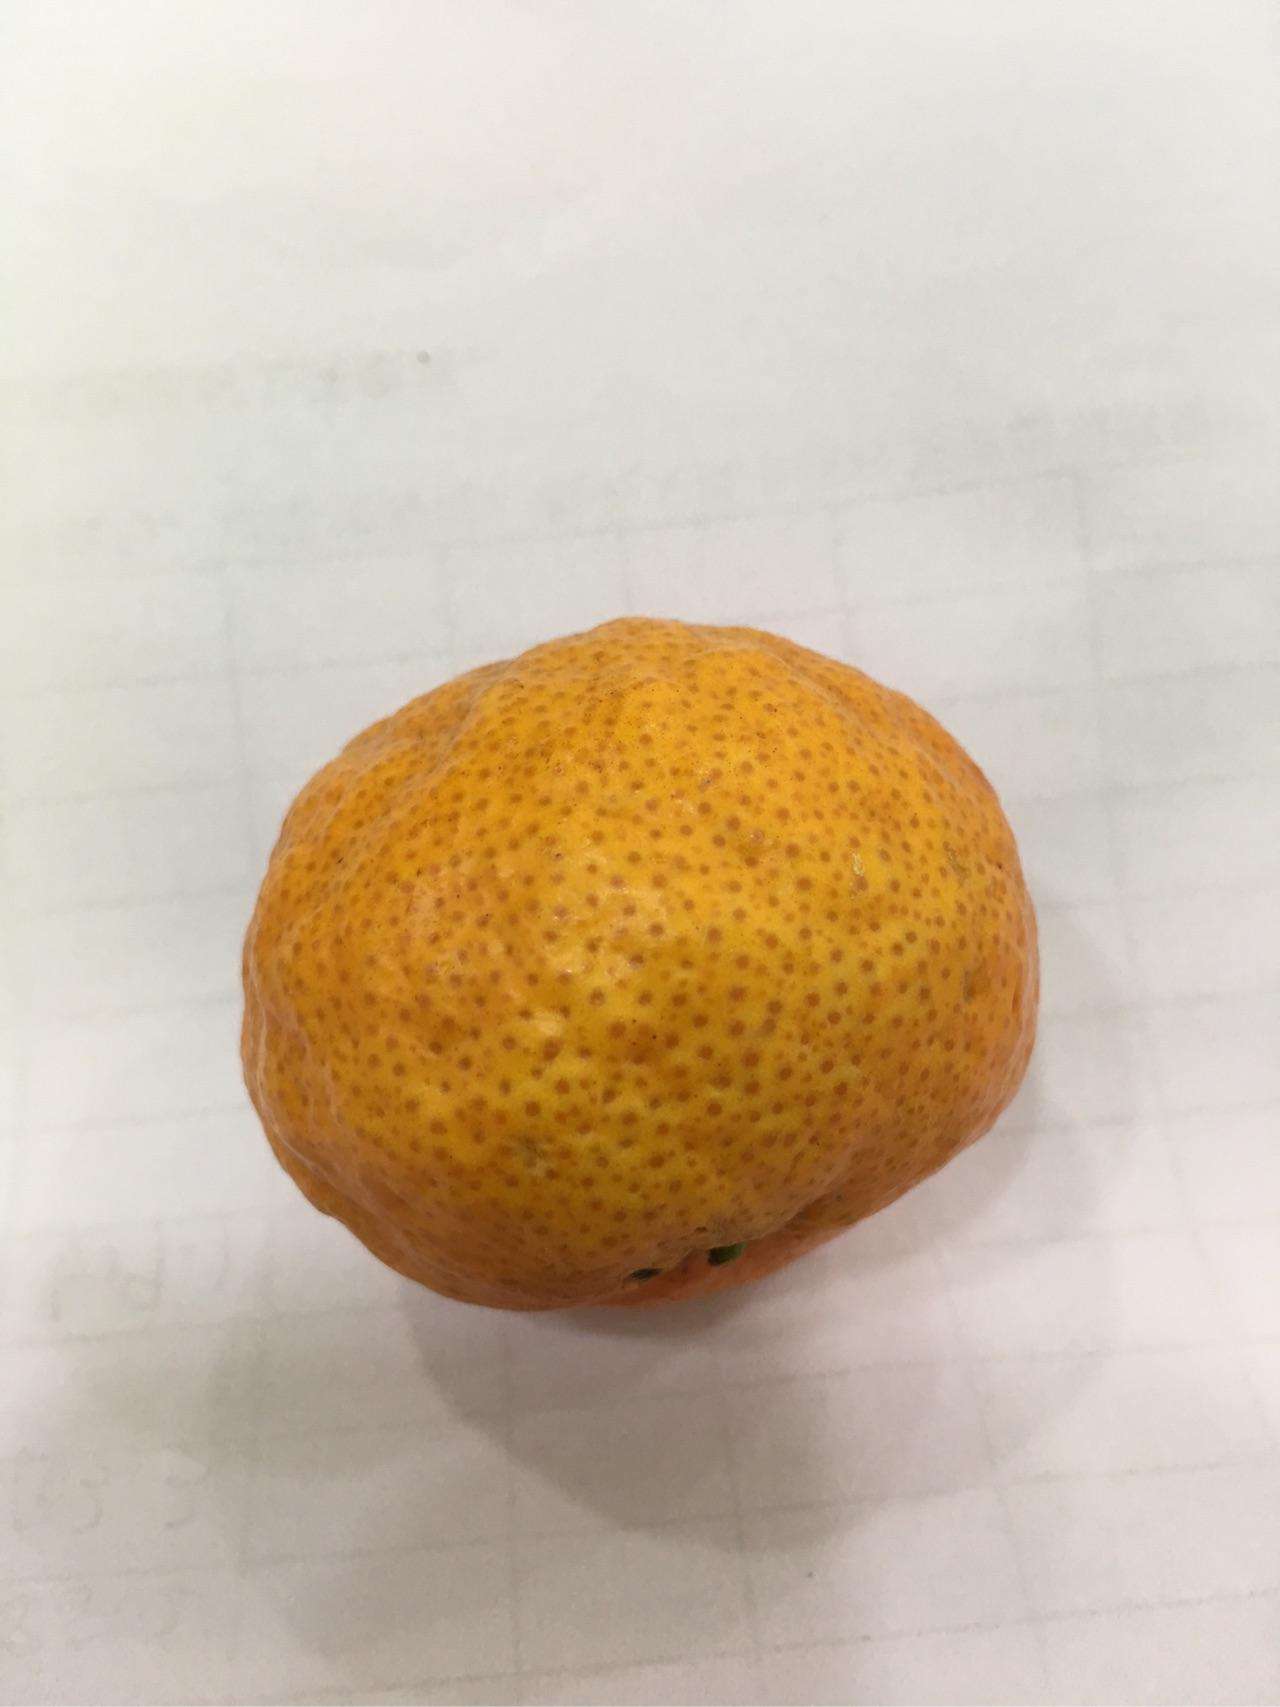 为什么现在的小橘子上有一个一个的小黄点?